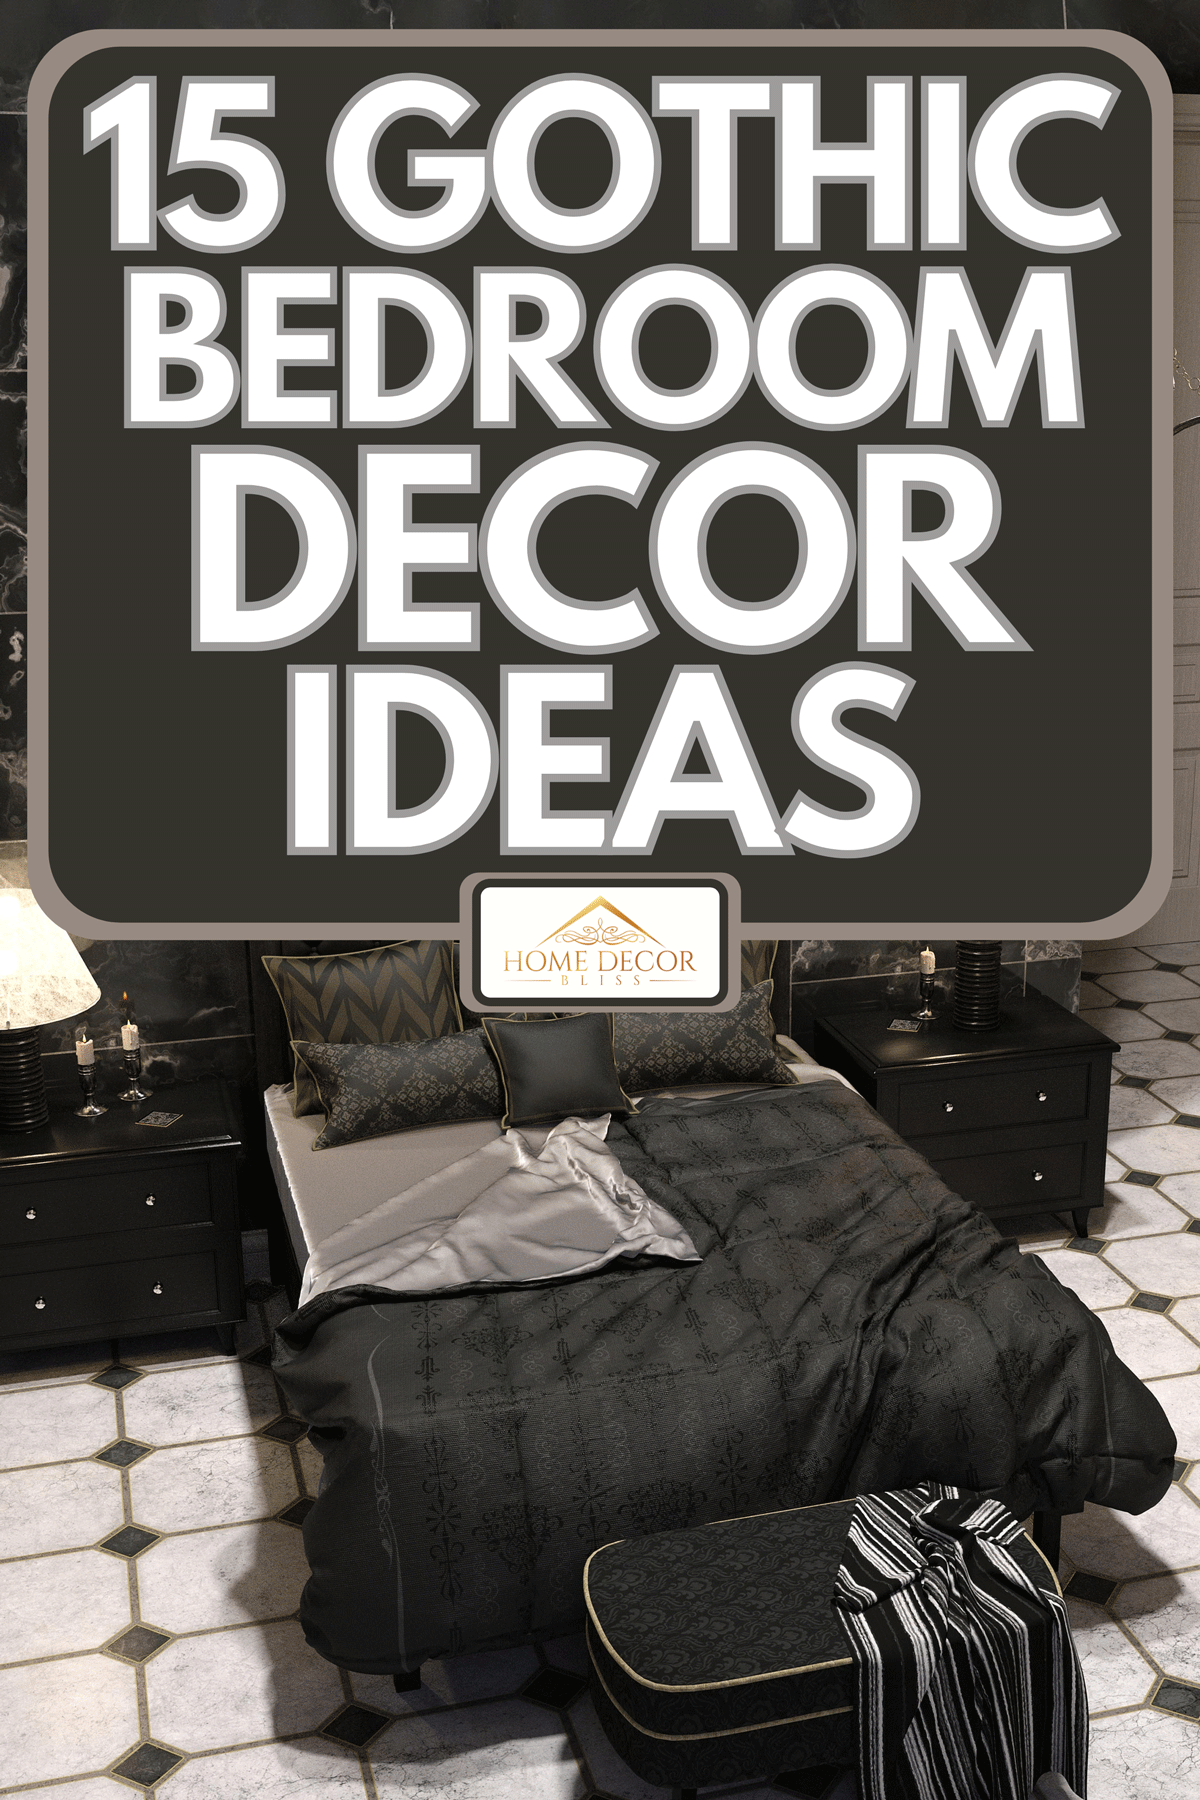 A luxury gothic bedroom interior, 15 Gothic Bedroom Decor Ideas